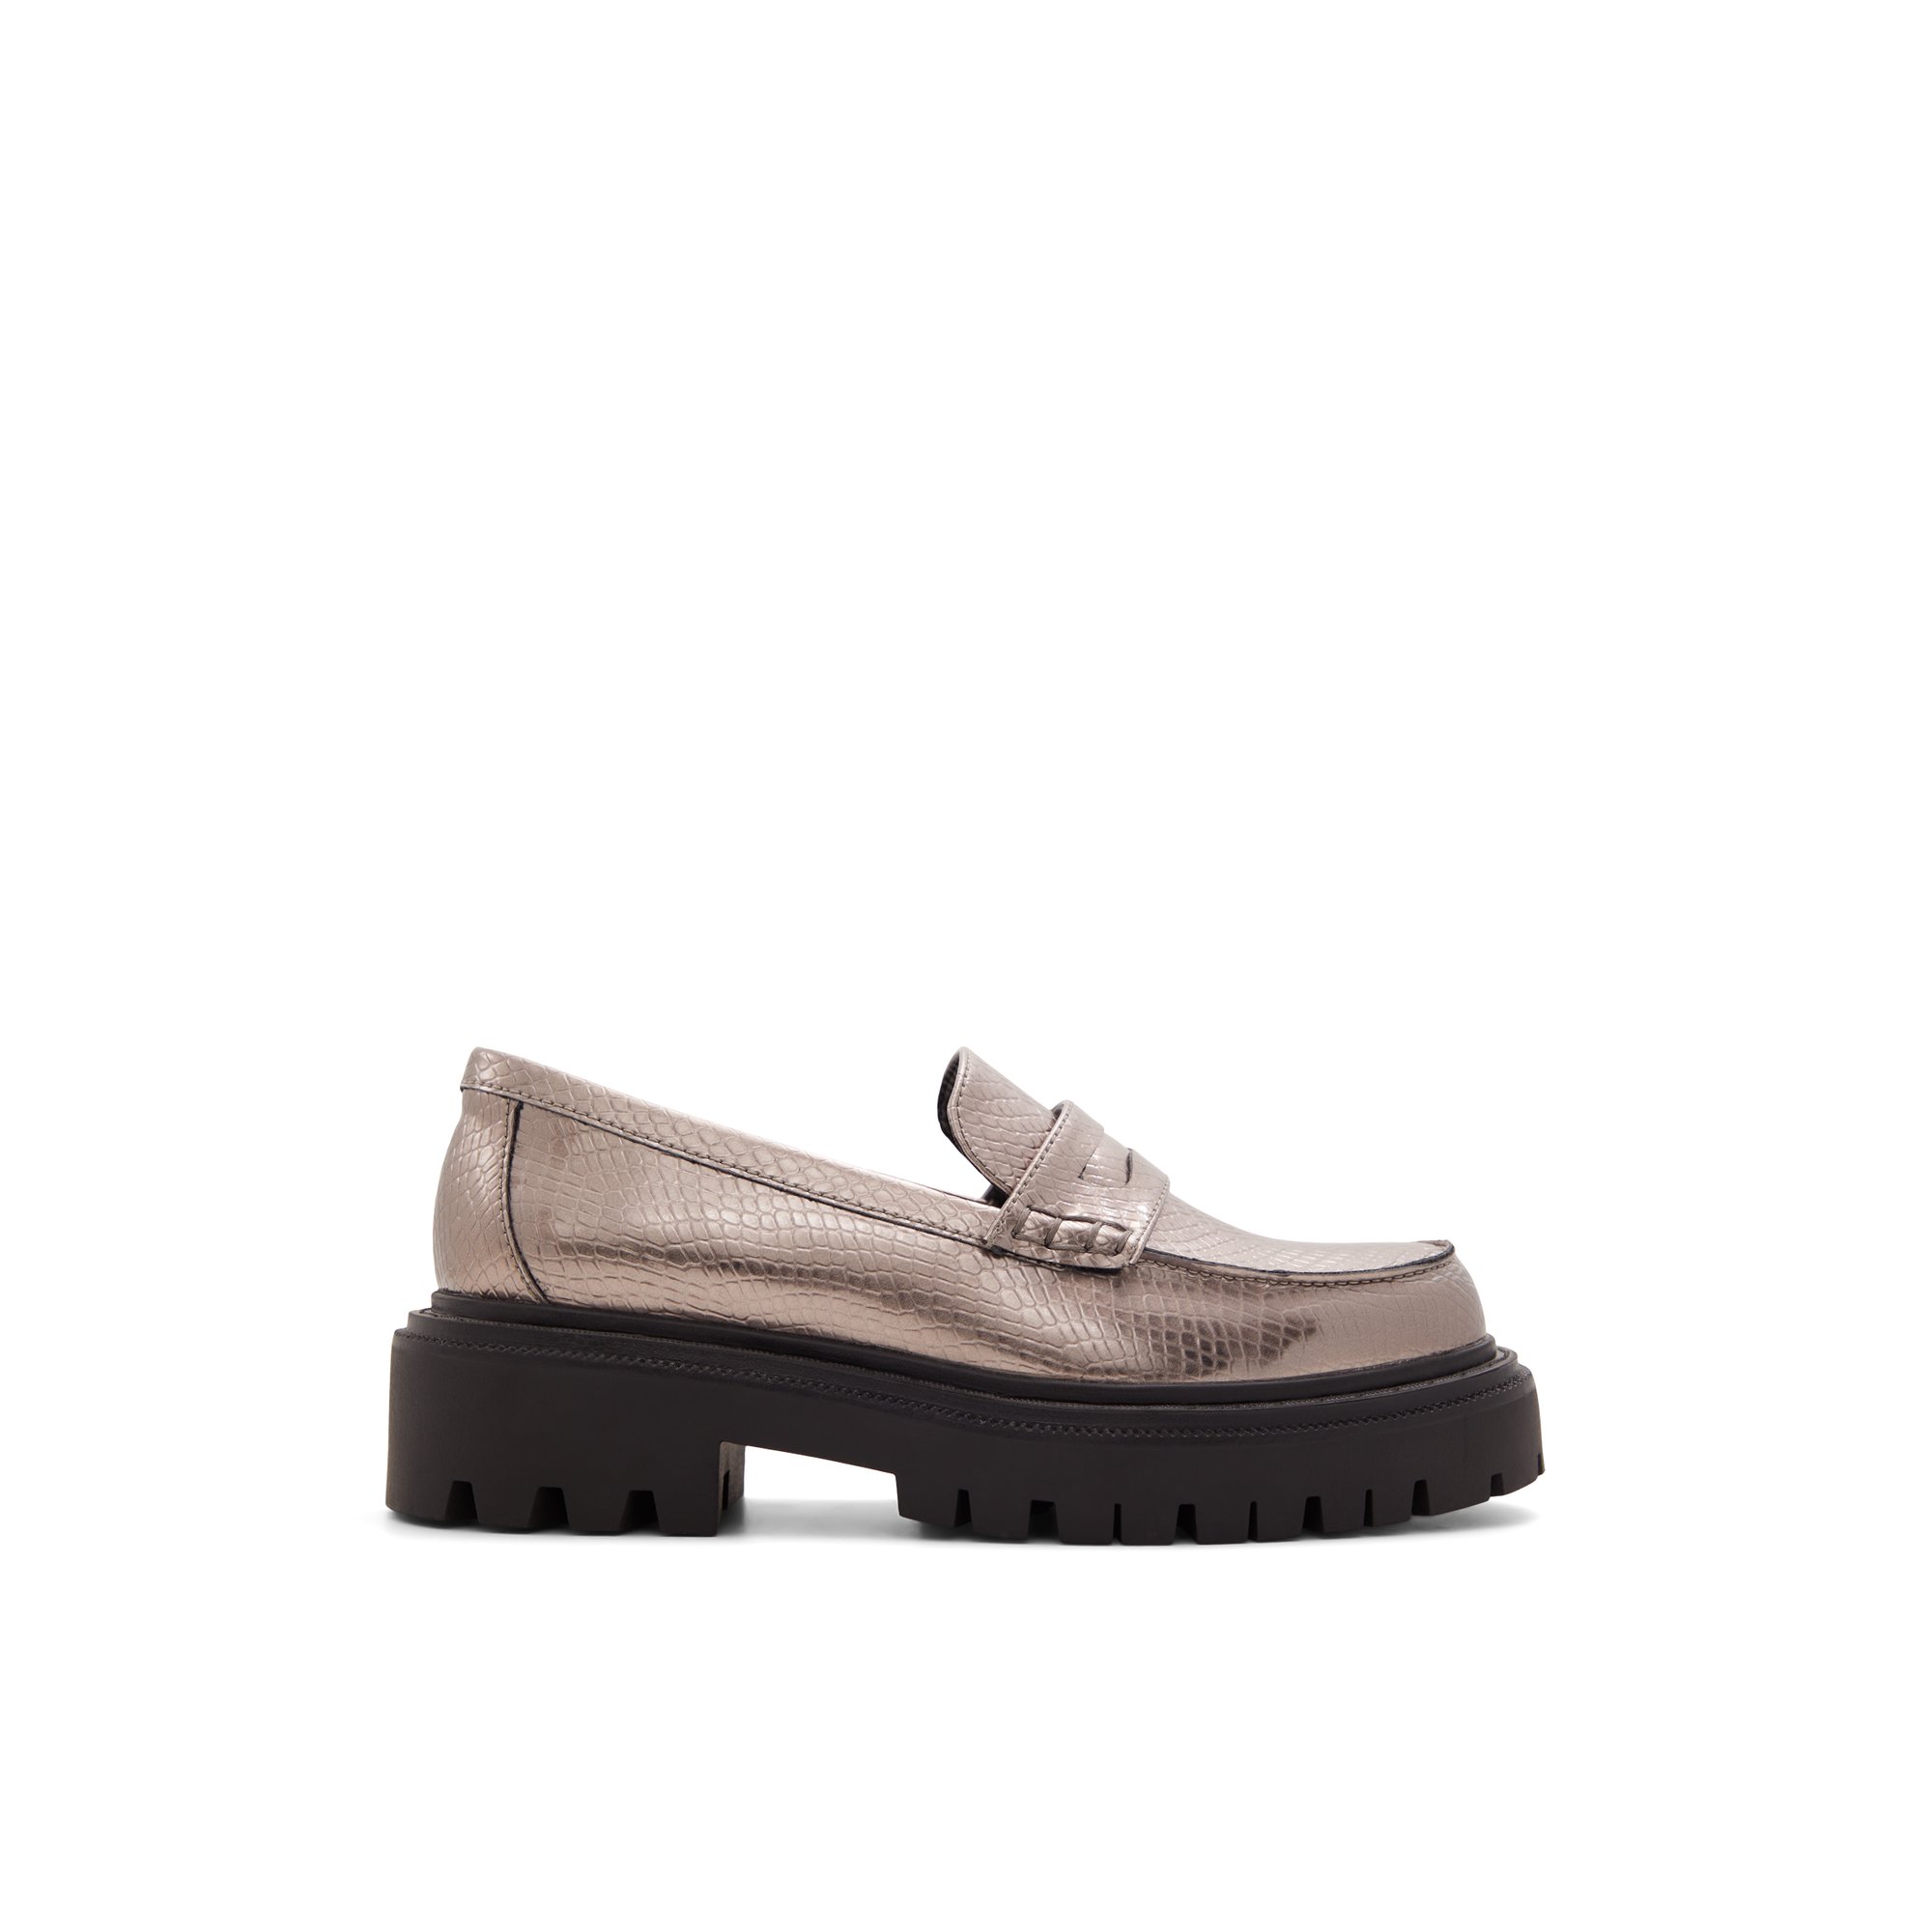 ALDO Bigstrut - Women's Loafers - Grey